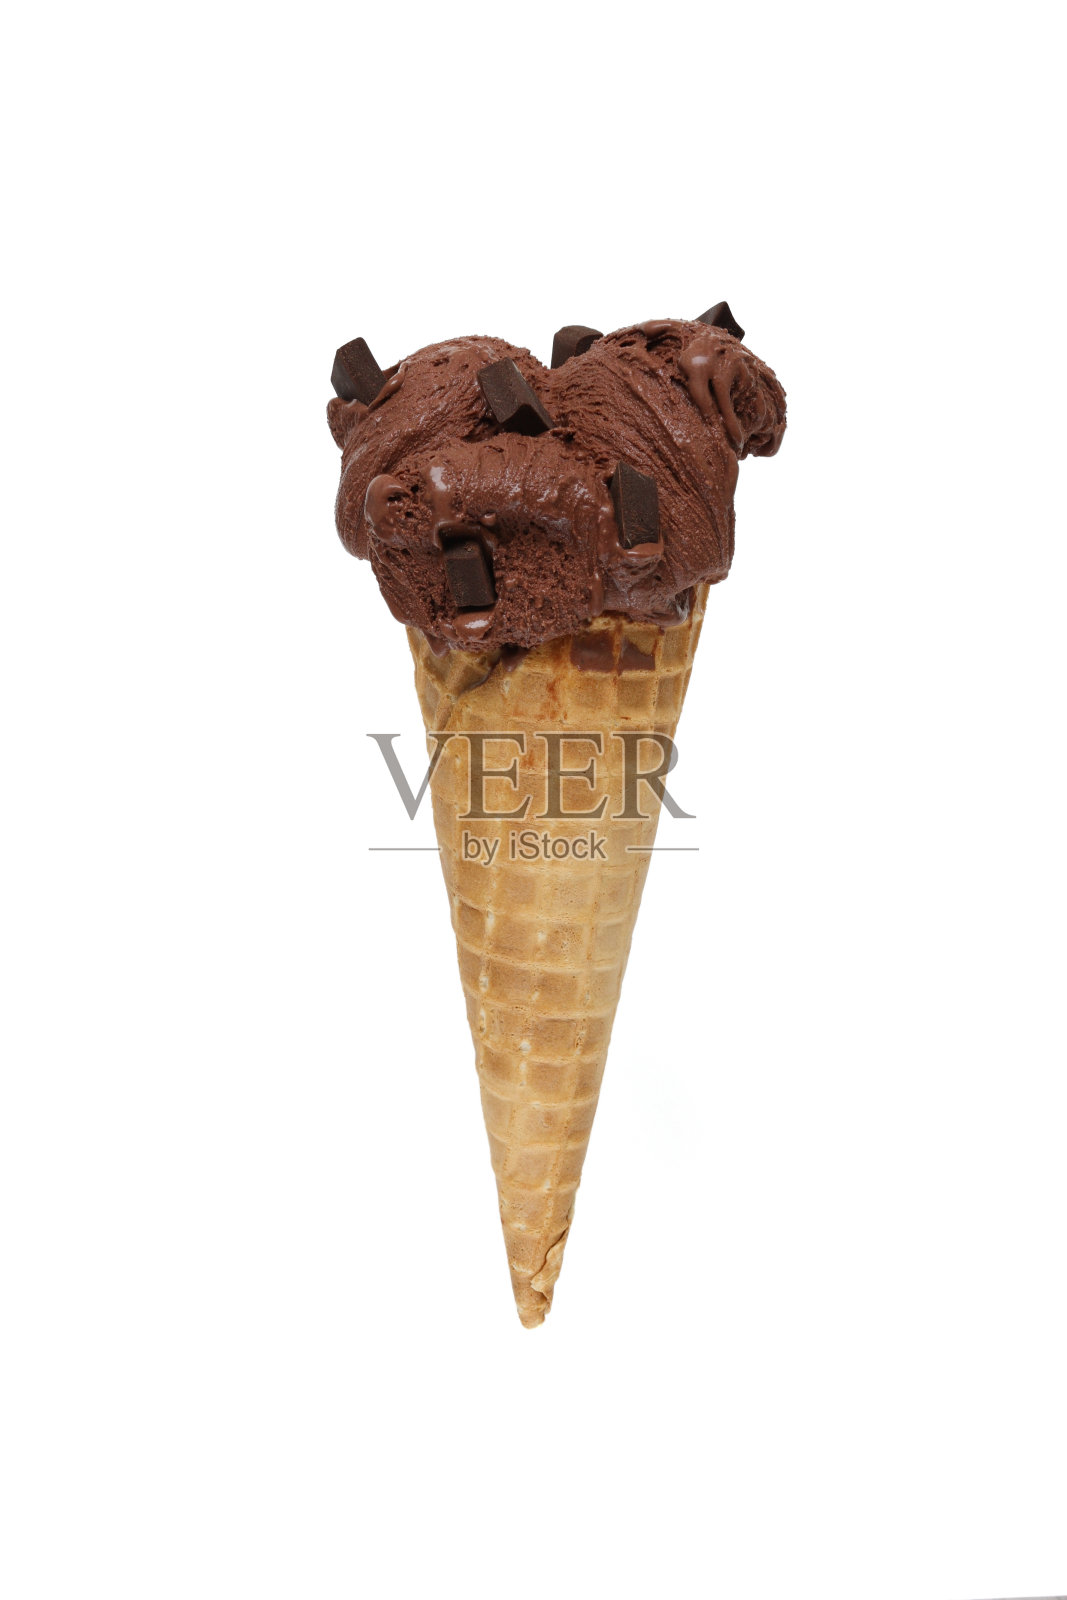 巧克力冰淇淋照片摄影图片